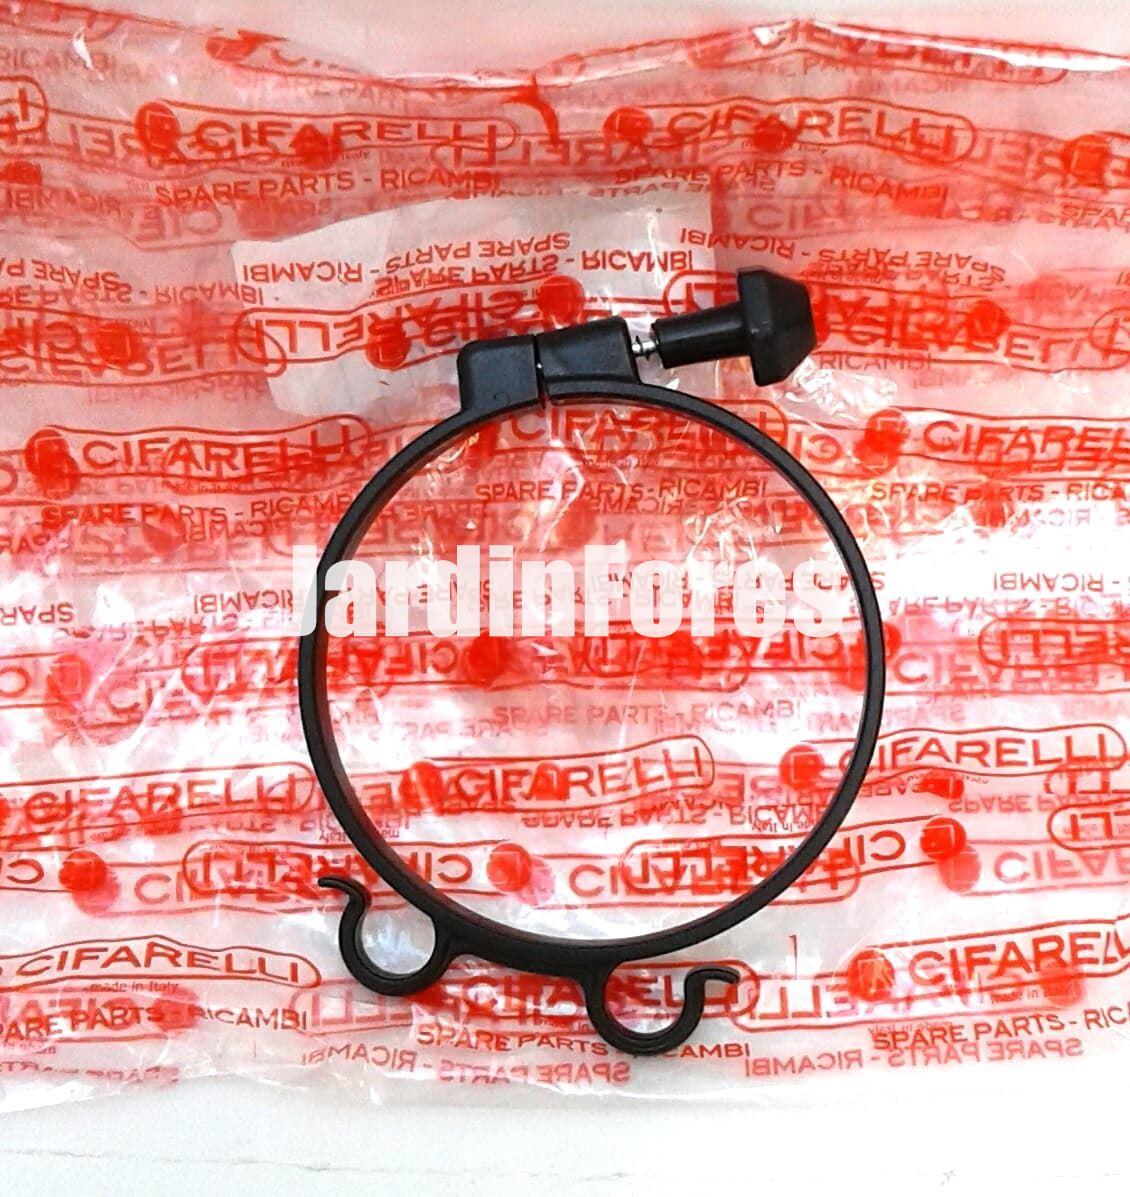 Abrazadera tubo flexible Cifarelli - Imagen 1